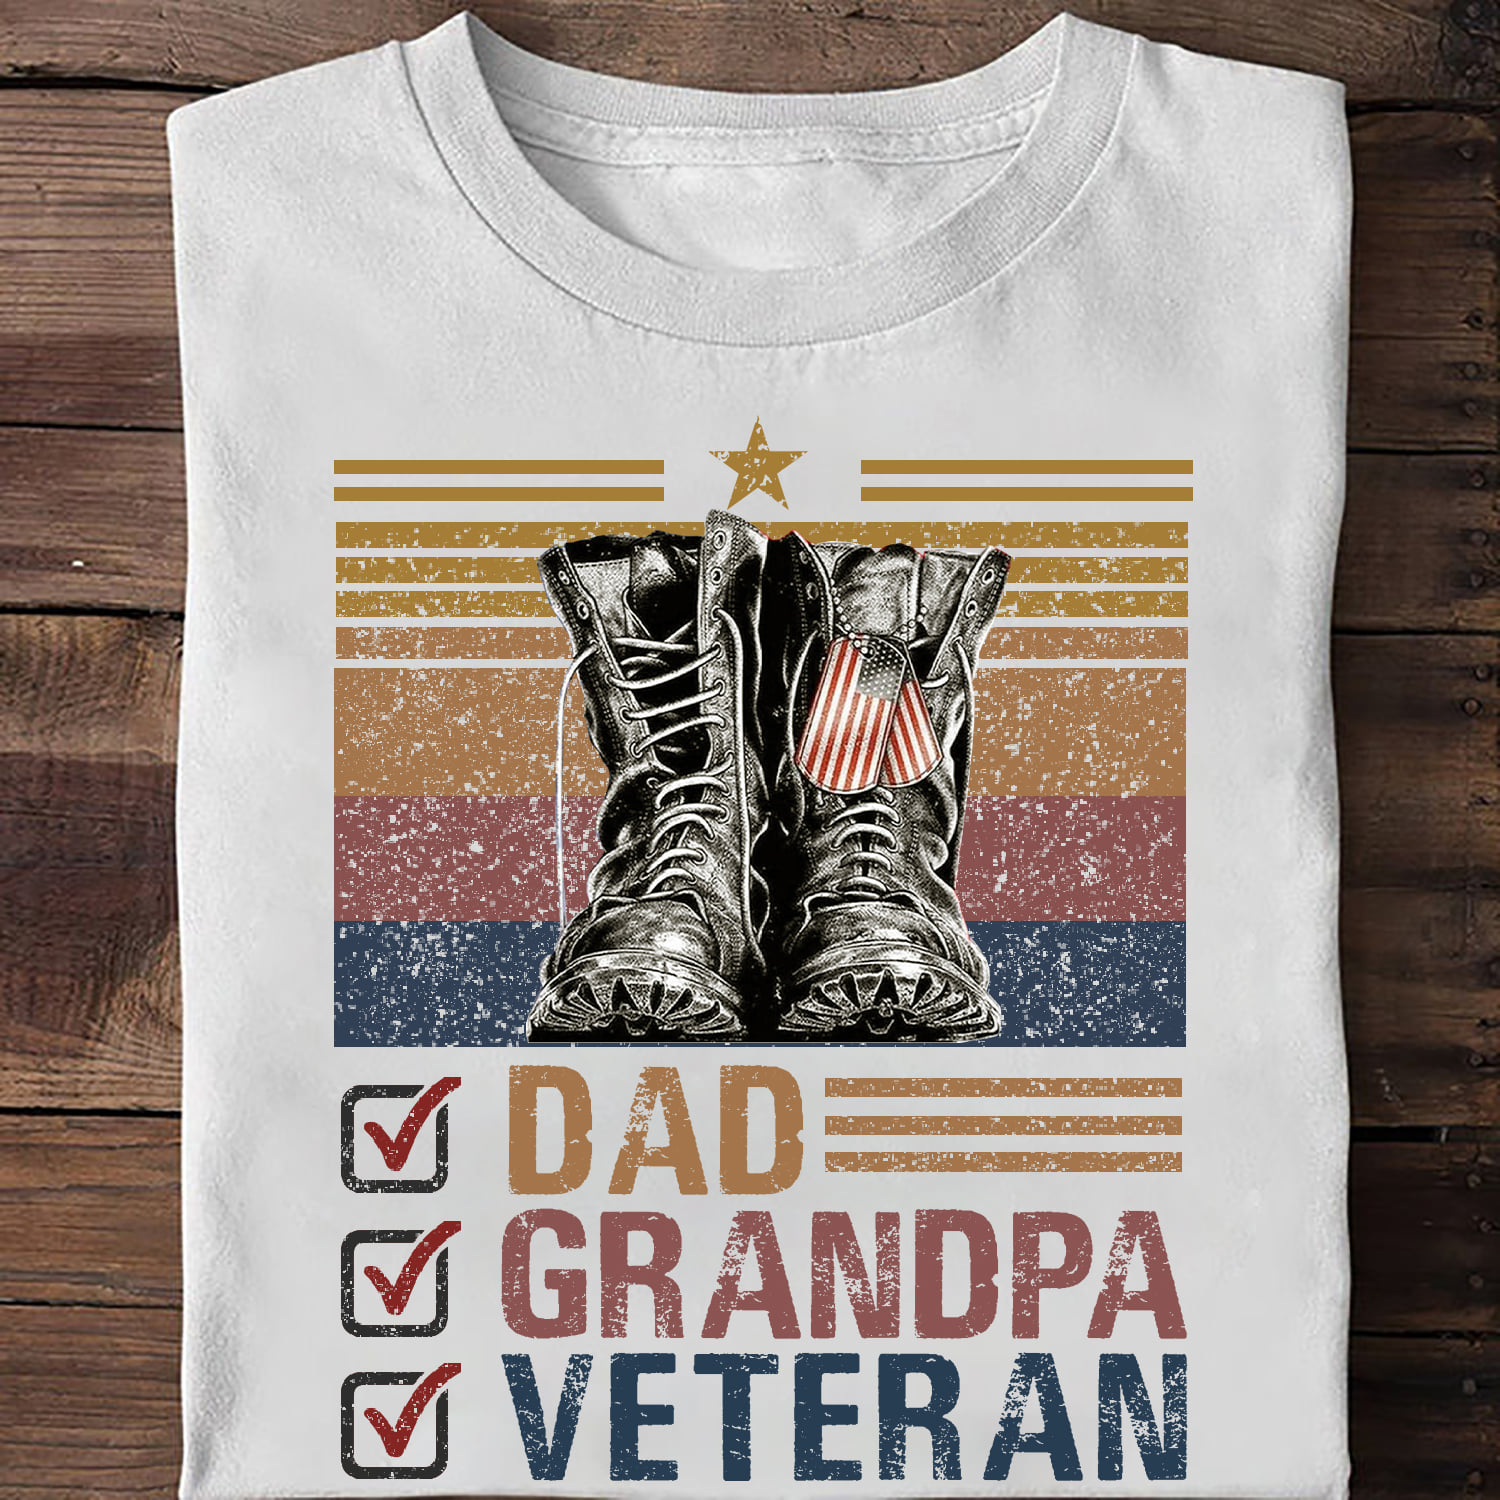 Dad grandpa veteran - Veteran shoes, father veteran